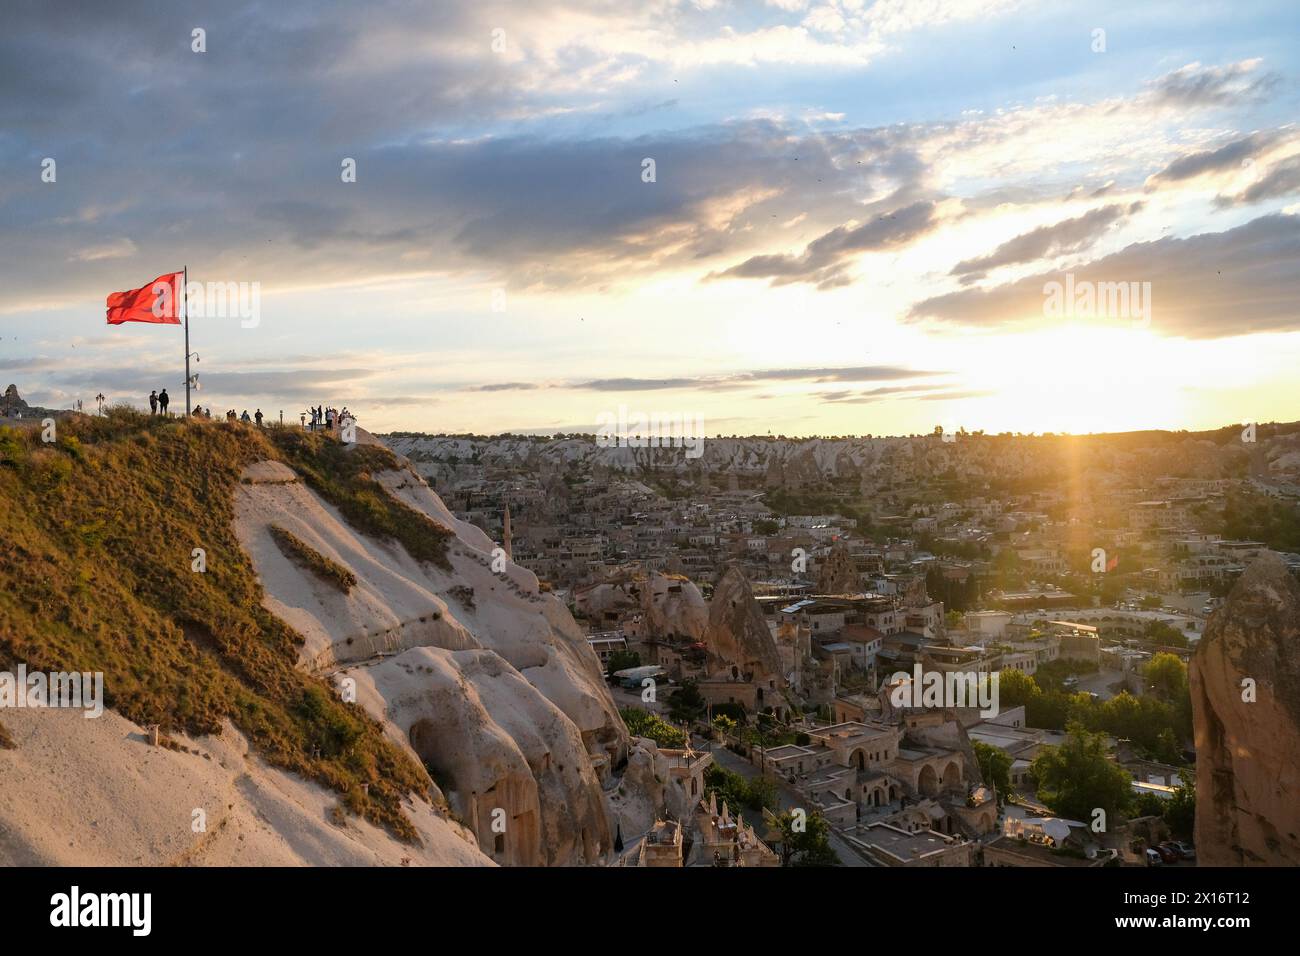 Die Leute beobachten Kappadokien und den Sonnenuntergang von der Panoramaterrasse. Sonnenuntergang und goldene Stunden in Kappadokien. Stockfoto